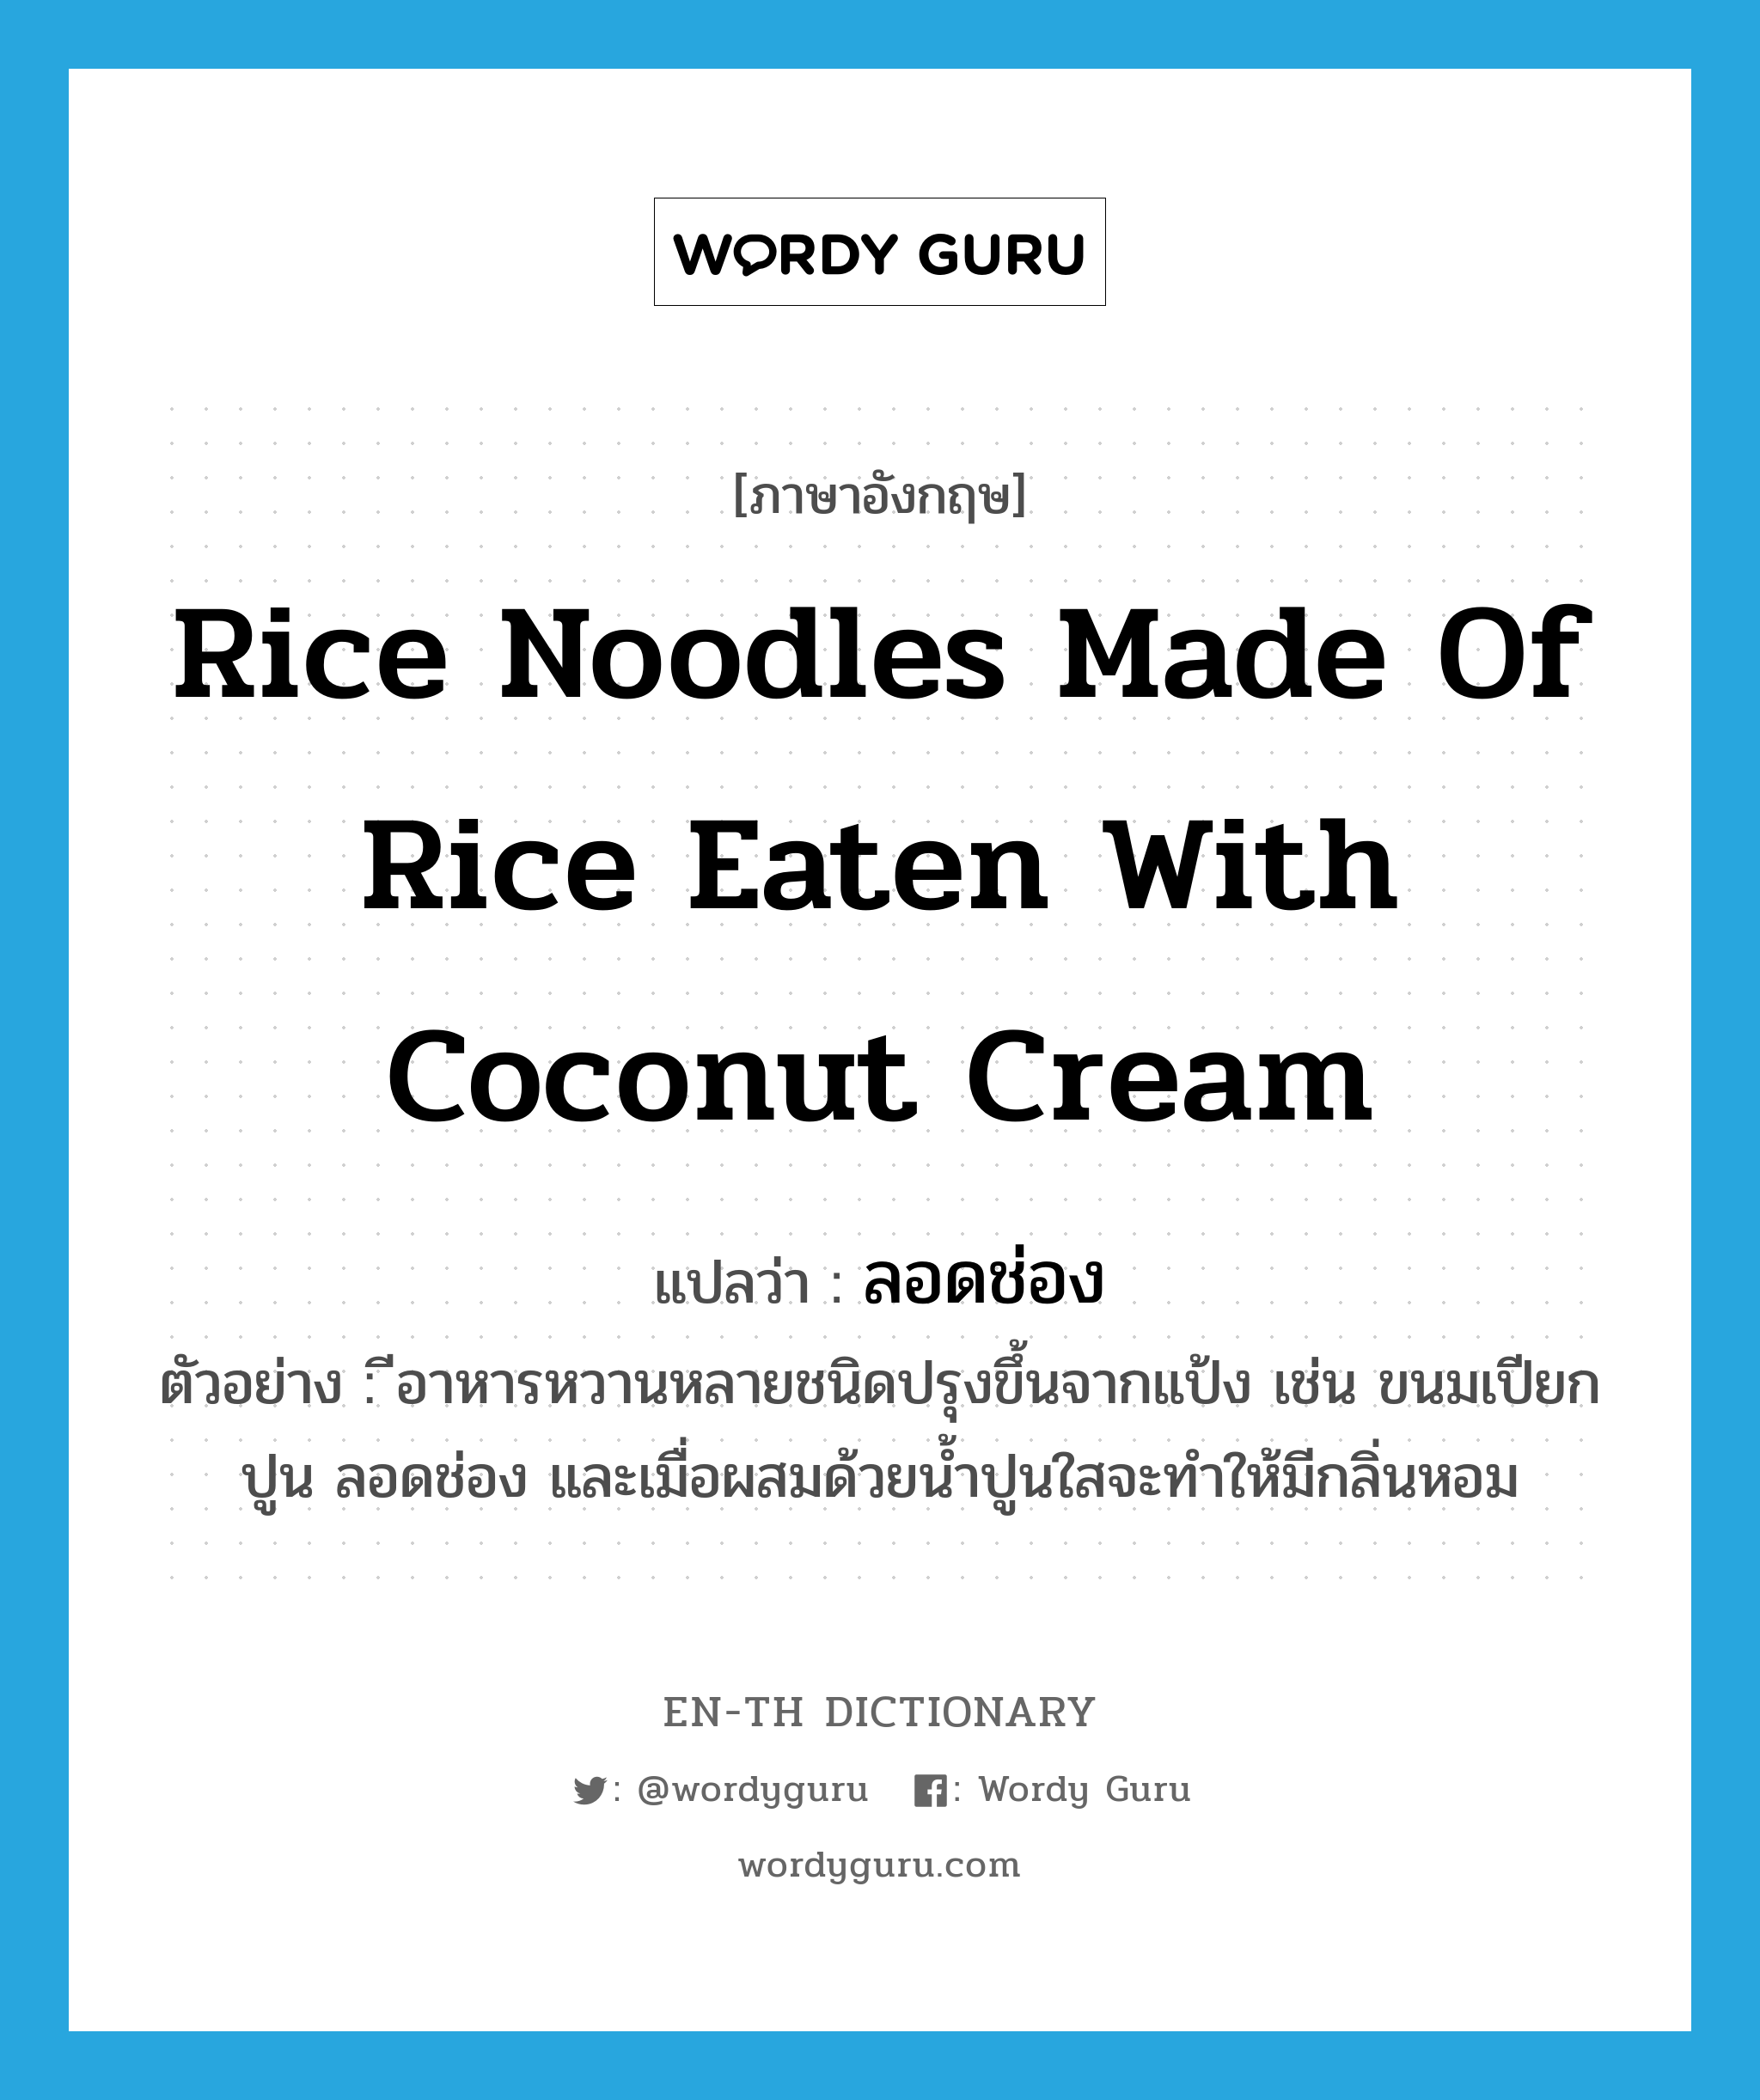 ลอดช่อง ภาษาอังกฤษ?, คำศัพท์ภาษาอังกฤษ ลอดช่อง แปลว่า rice noodles made of rice eaten with coconut cream ประเภท N ตัวอย่าง ีอาหารหวานหลายชนิดปรุงขึ้นจากแป้ง เช่น ขนมเปียกปูน ลอดช่อง และเมื่อผสมด้วยน้ำปูนใสจะทำให้มีกลิ่นหอม หมวด N